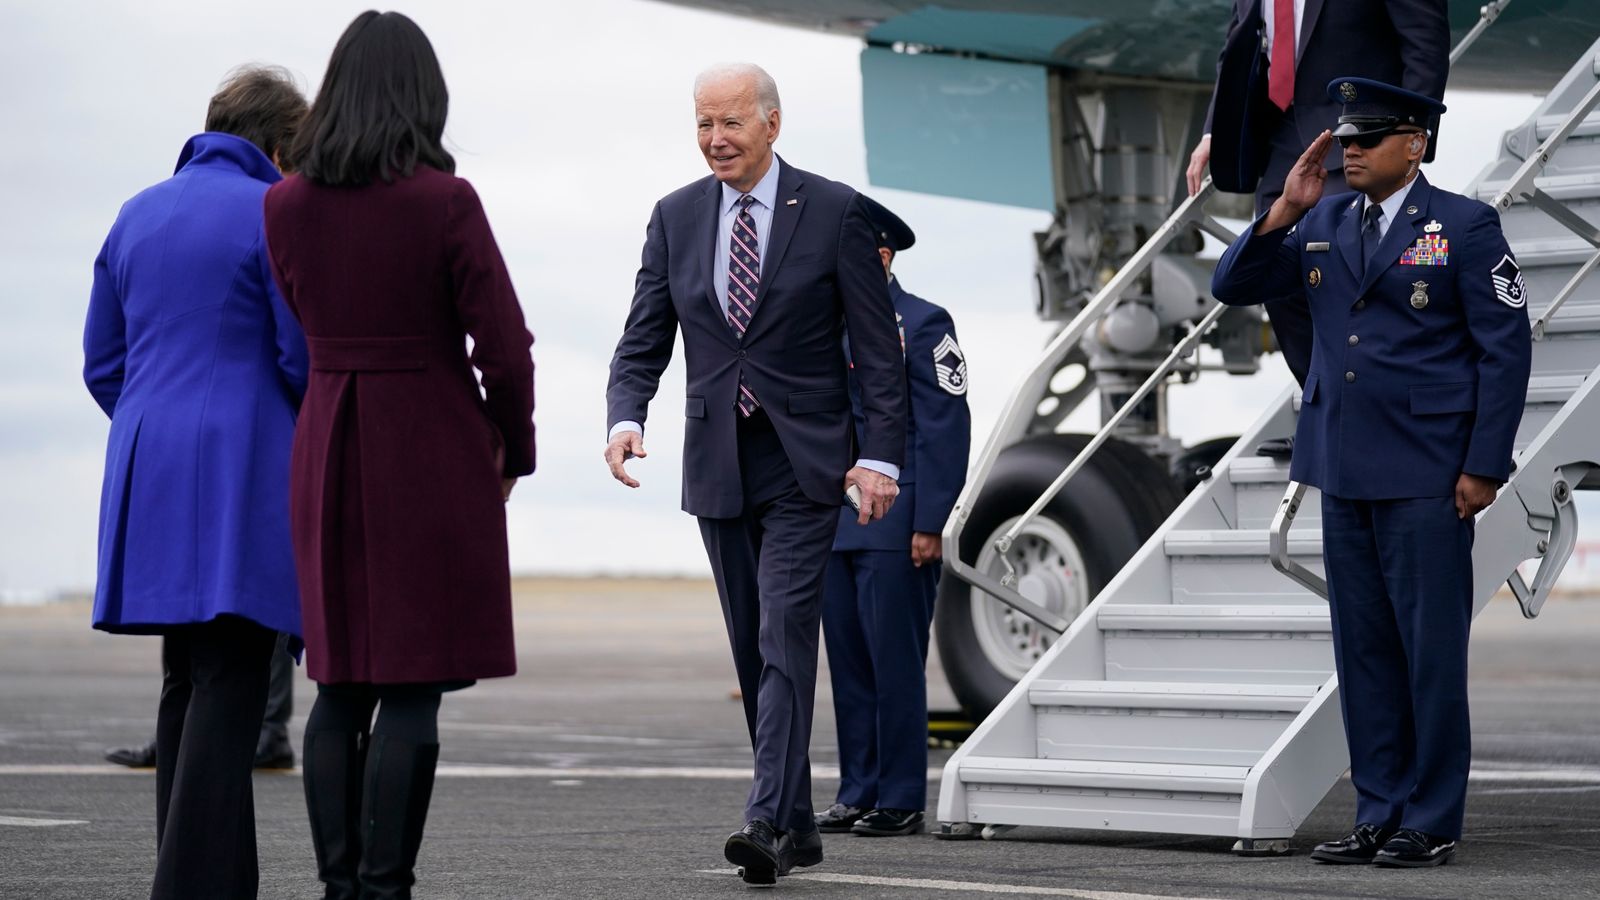 Biden says he 'wasn't sure if he'd be running if Trump weren't in the race'